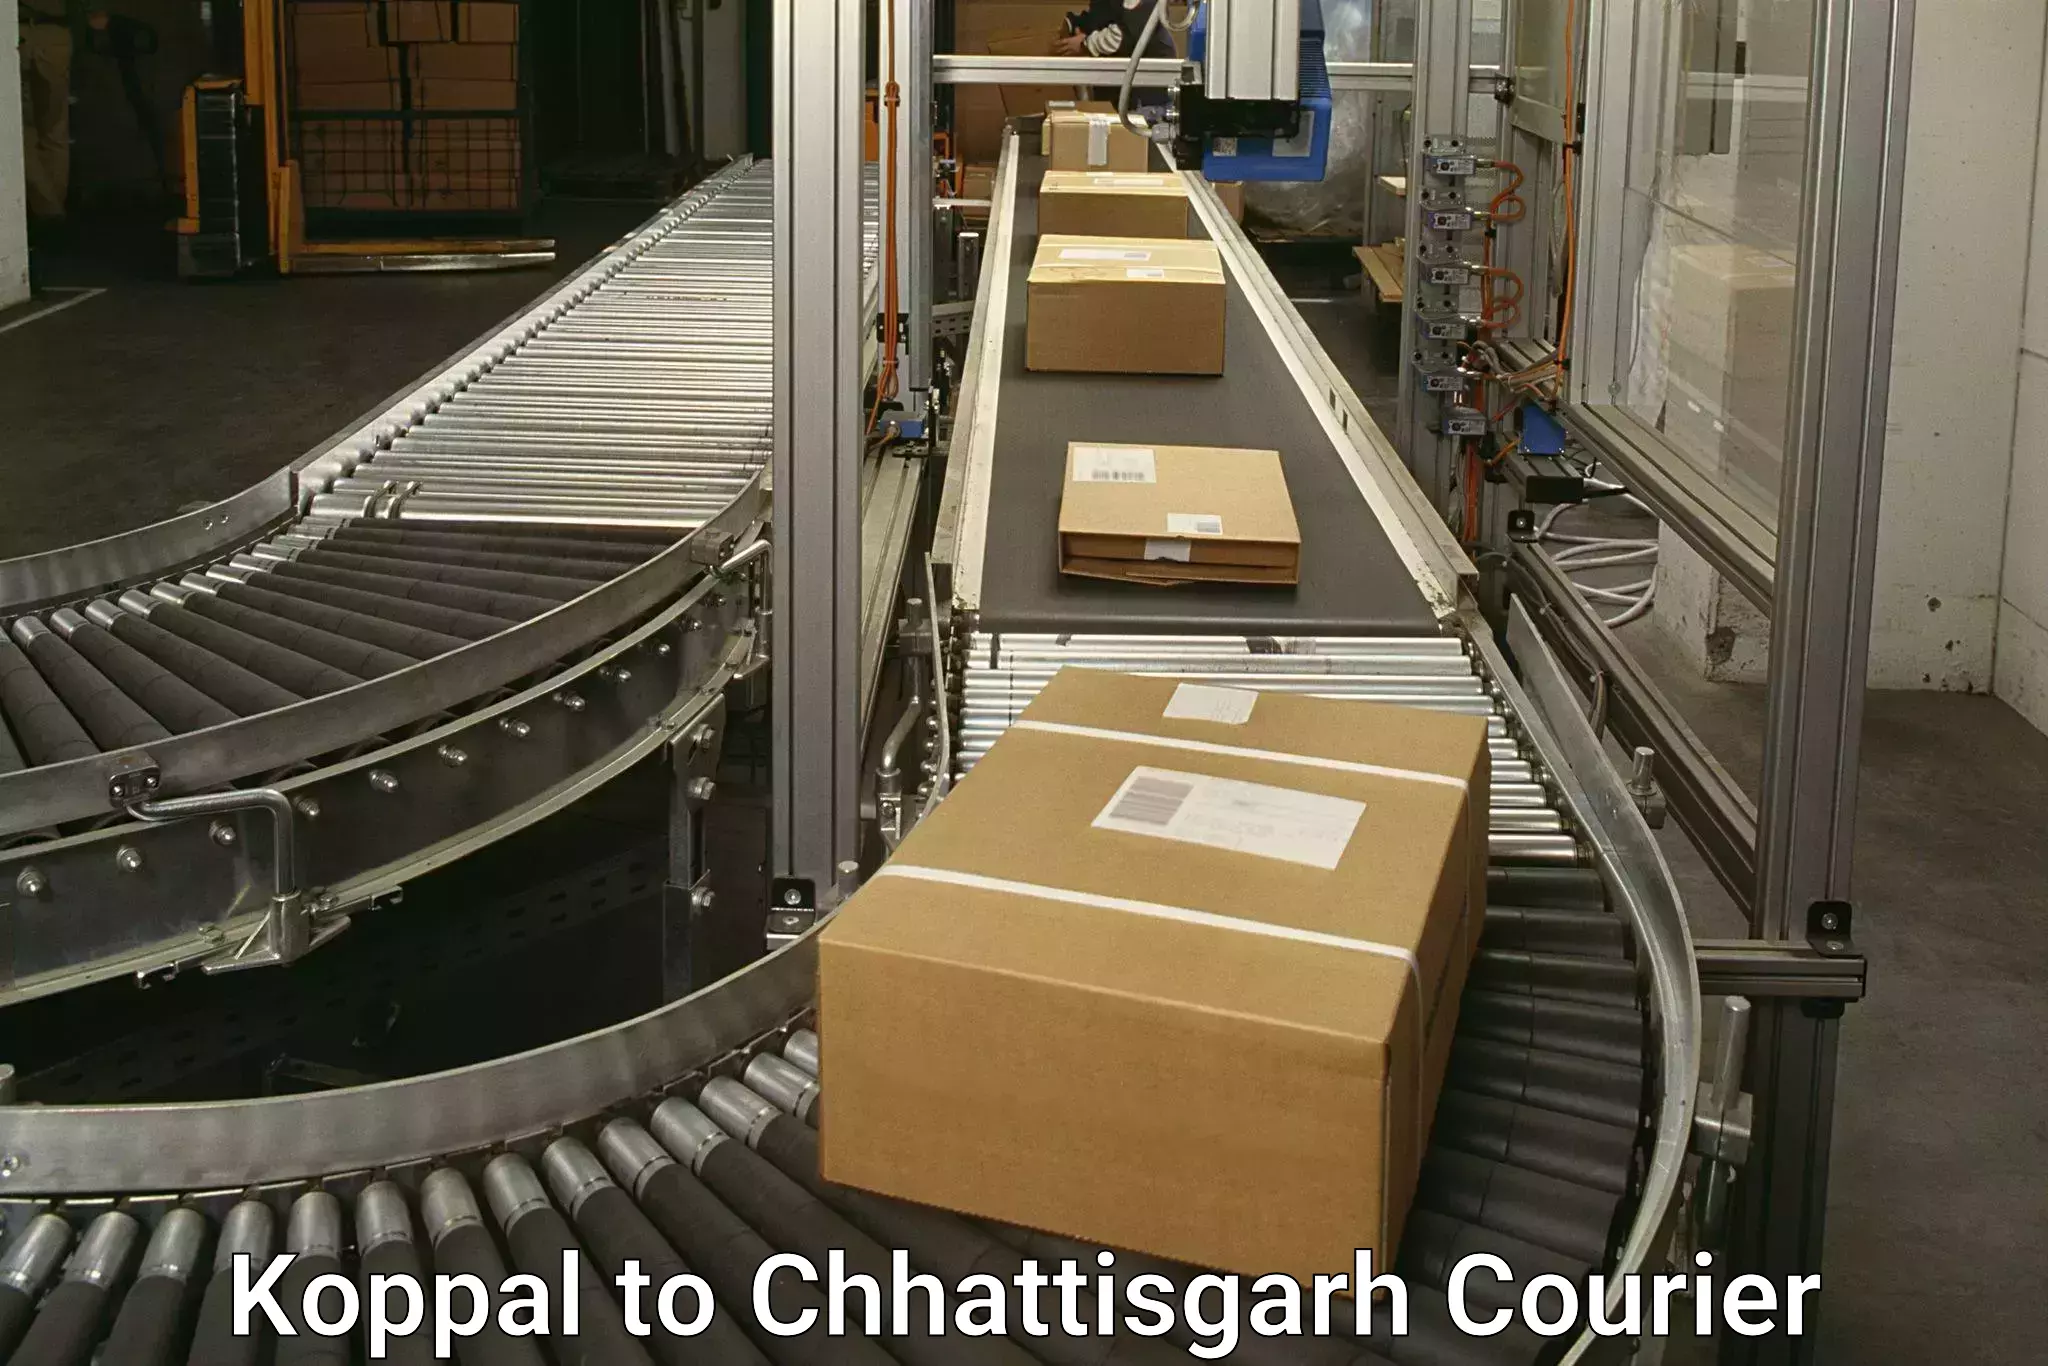 Efficient cargo handling Koppal to Bijapur Chhattisgarh